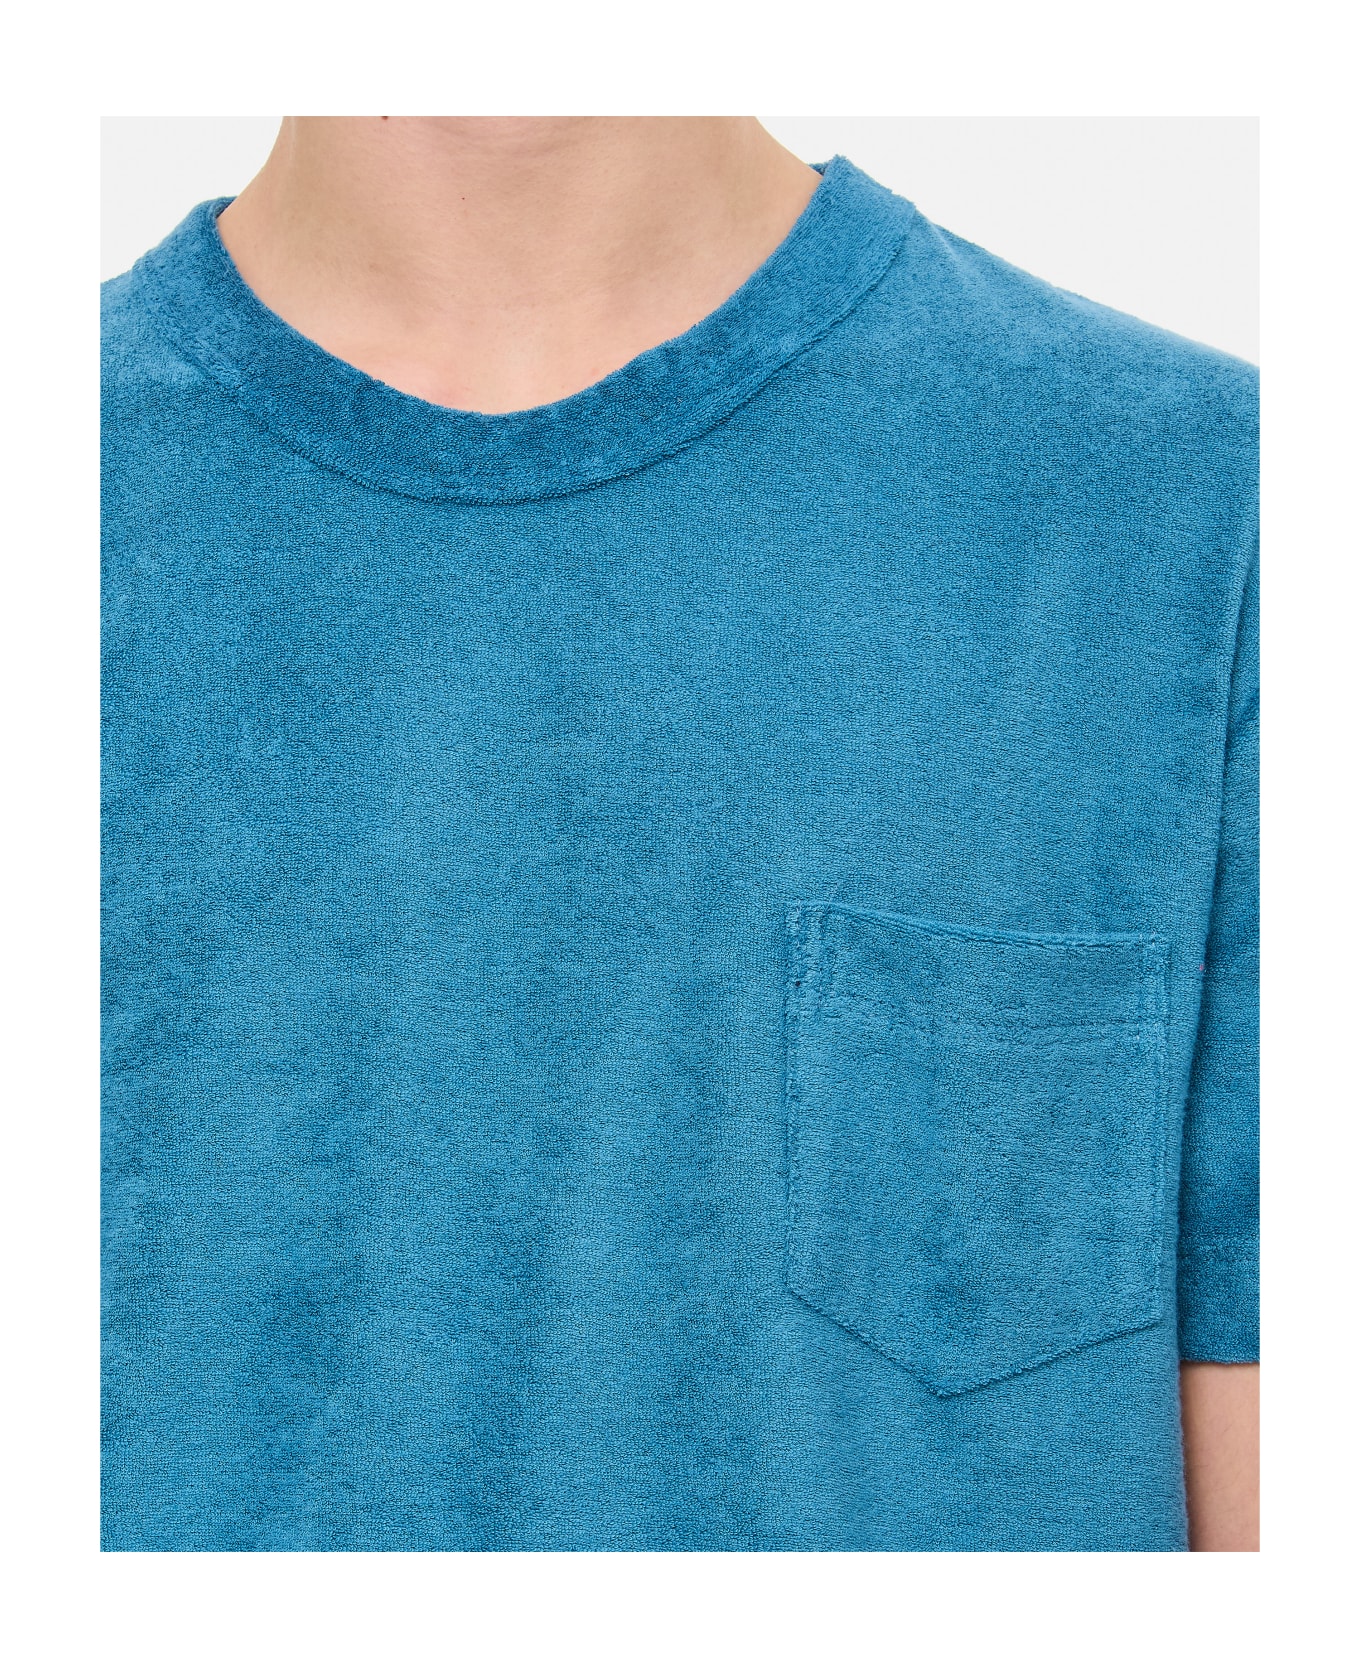 Howlin Shortsleeve Cotton T-shirt - Blue